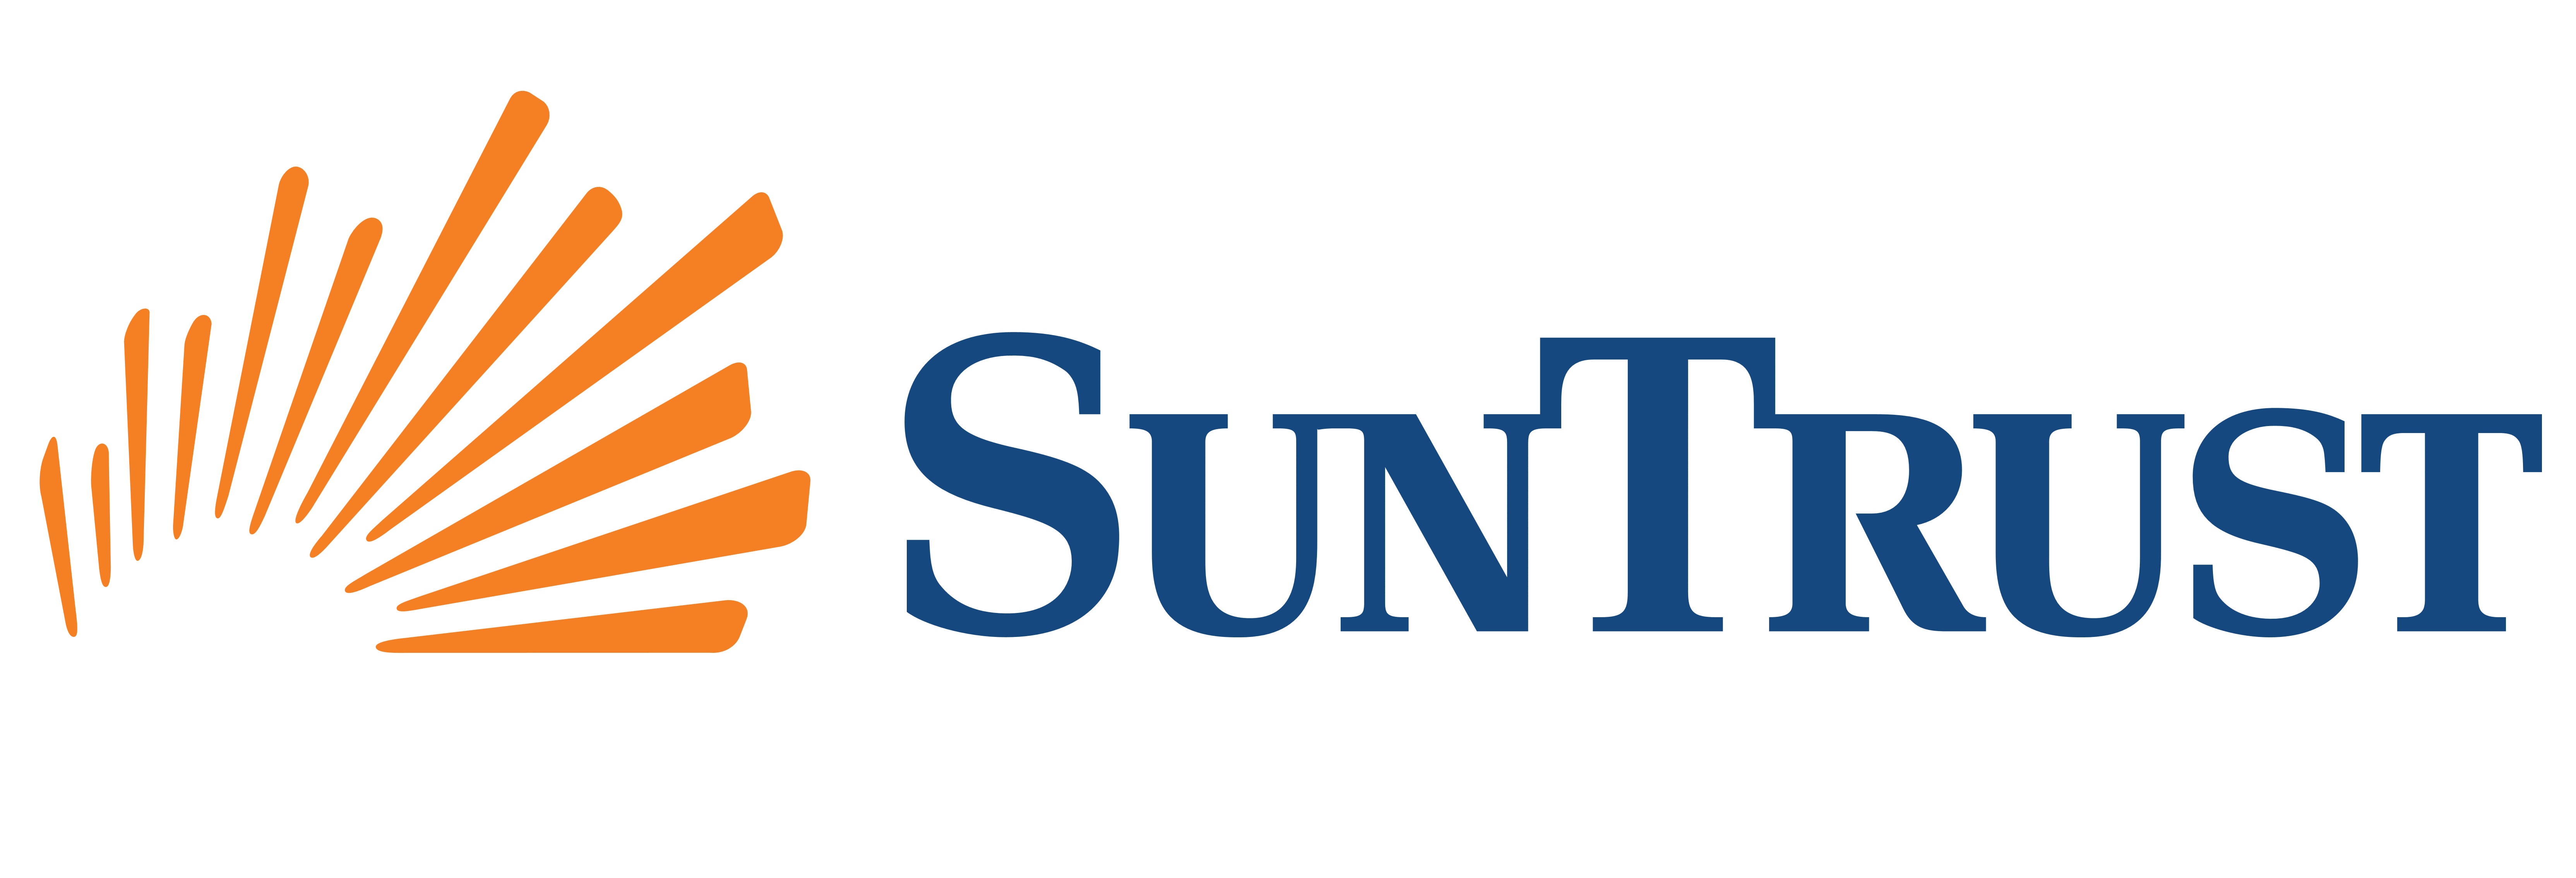 Suntrust Bank Logos Download